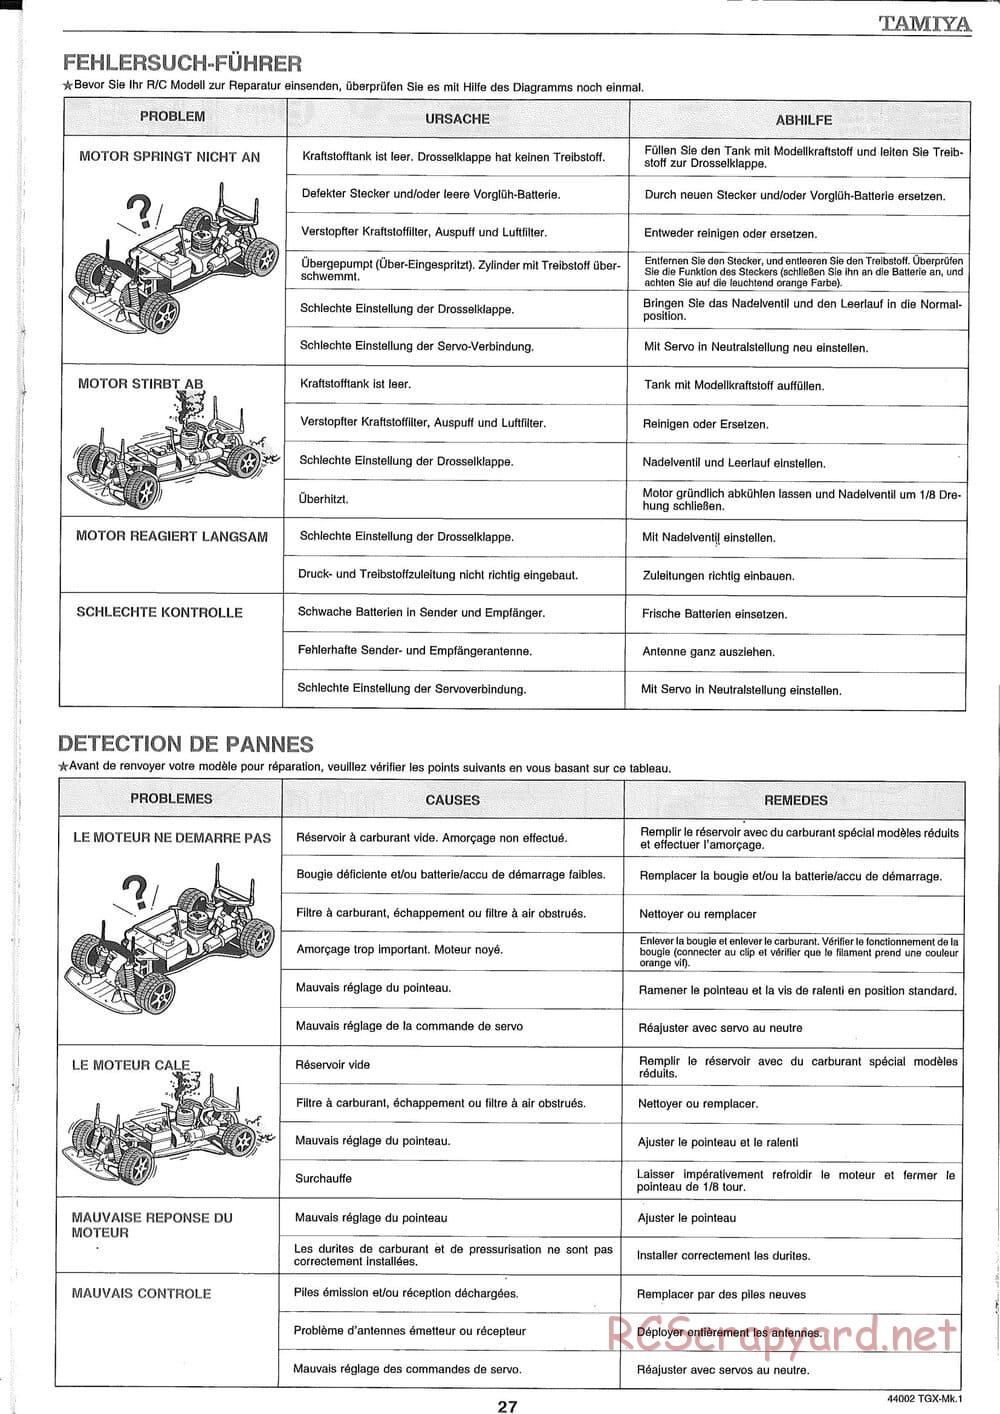 Tamiya - TGX Mk.1 TS Chassis Chassis - Manual - Page 27